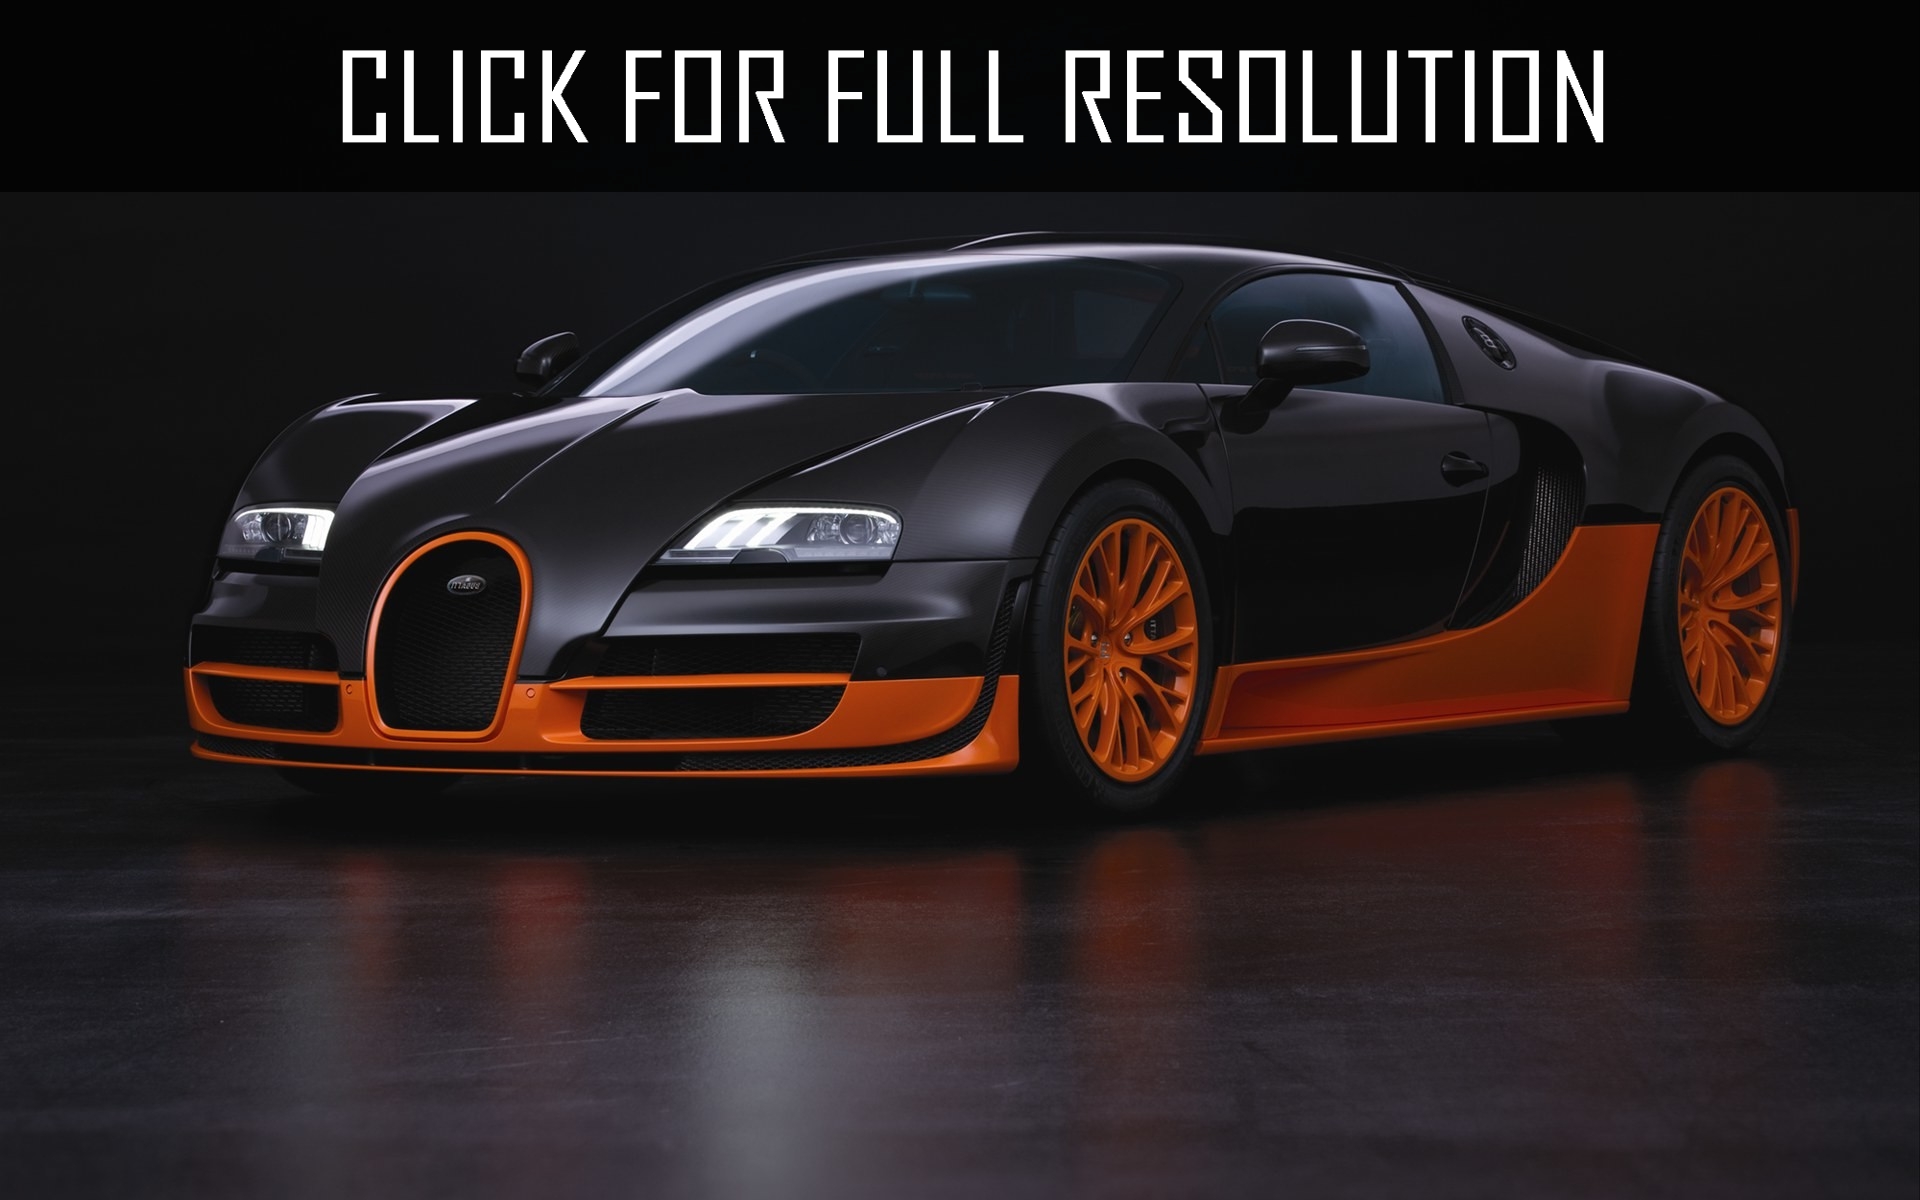 2015 Bugatti Veyron